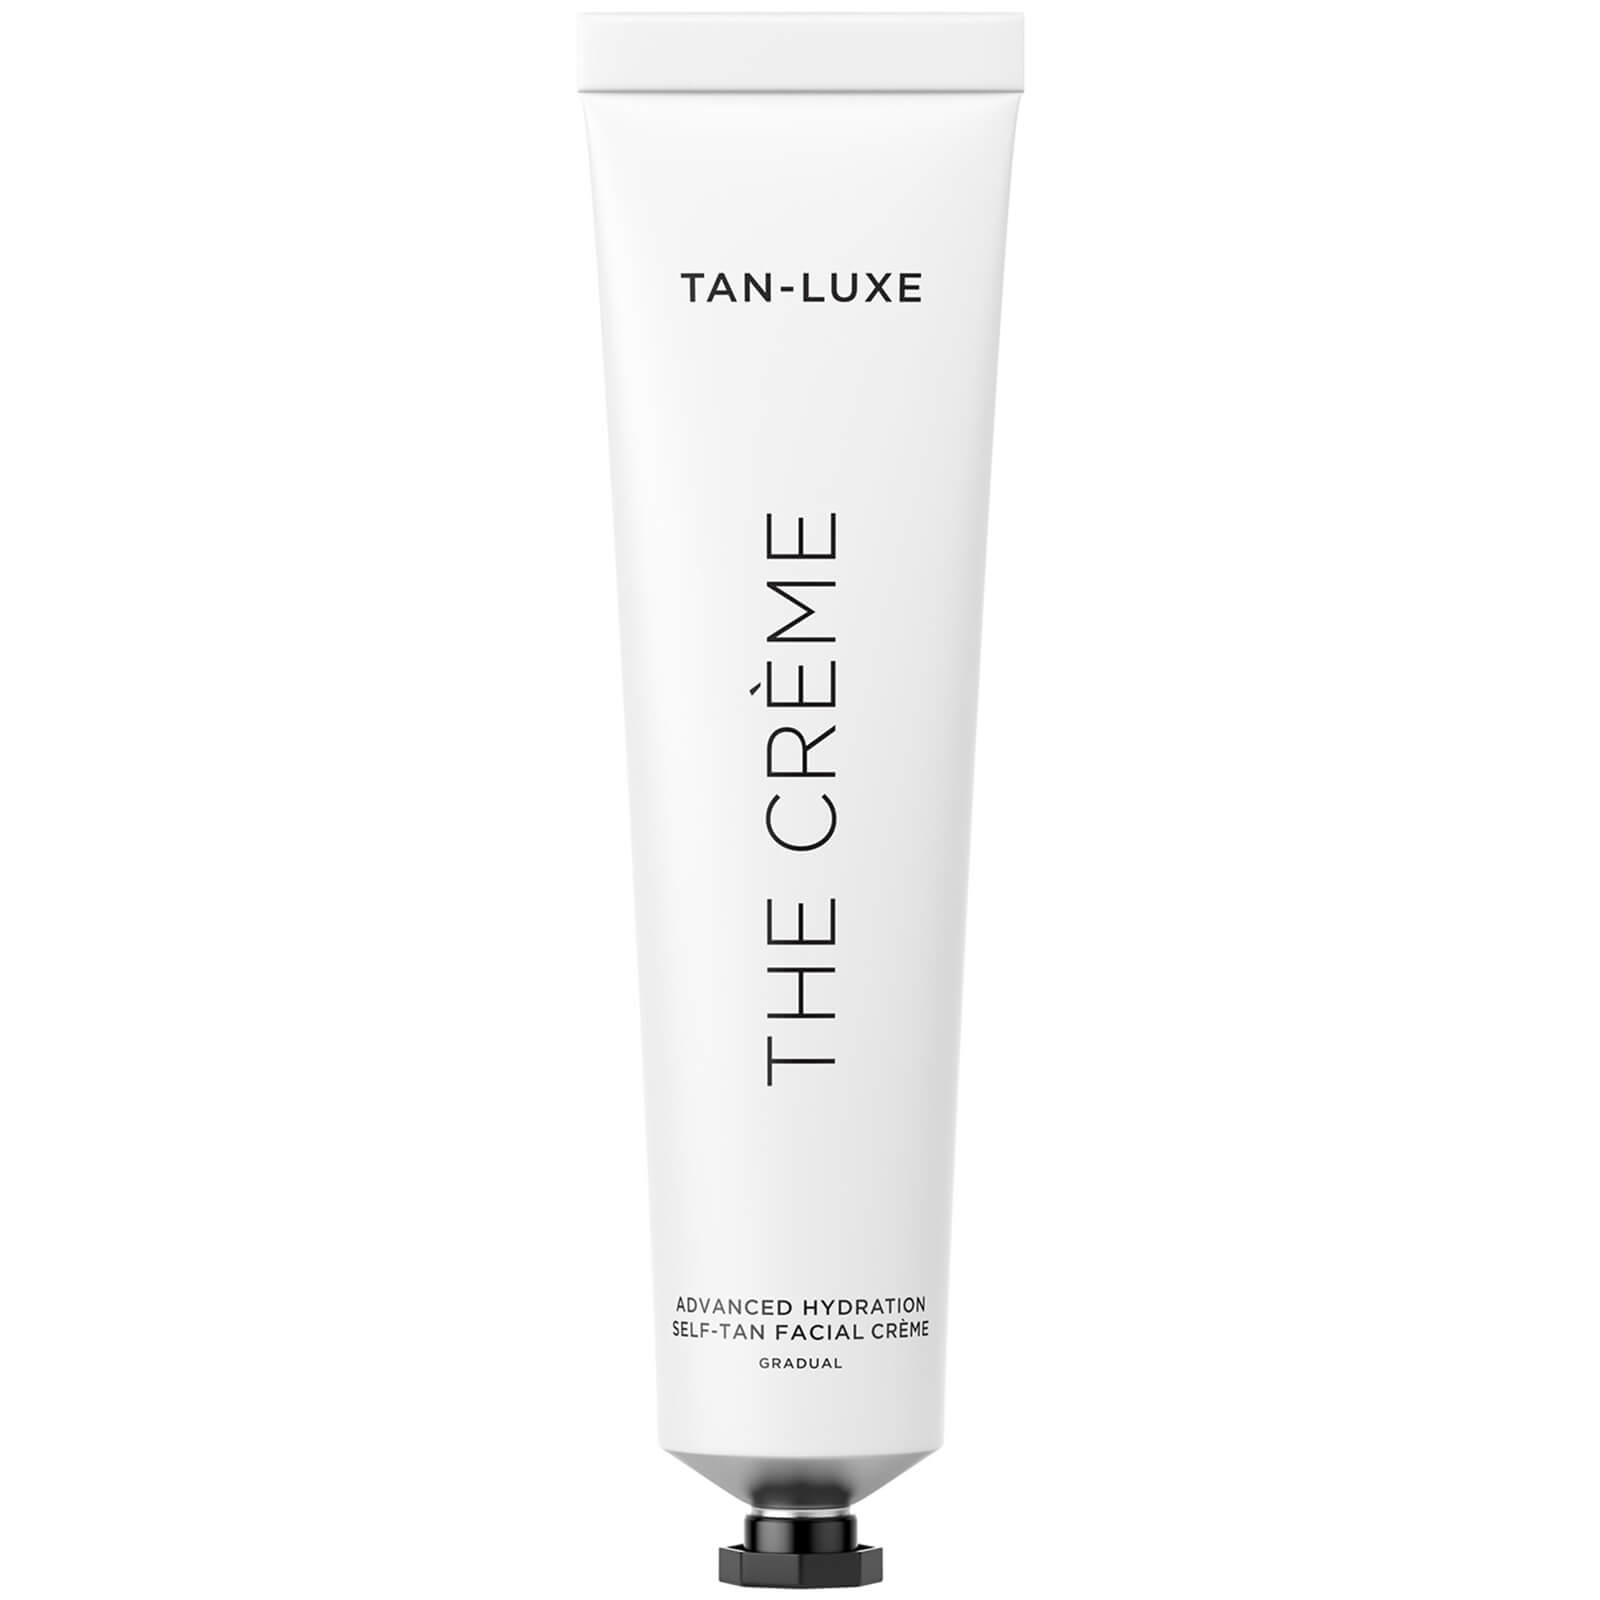 Photos - Sun Skin Care Tan-Luxe The Crème 65ml